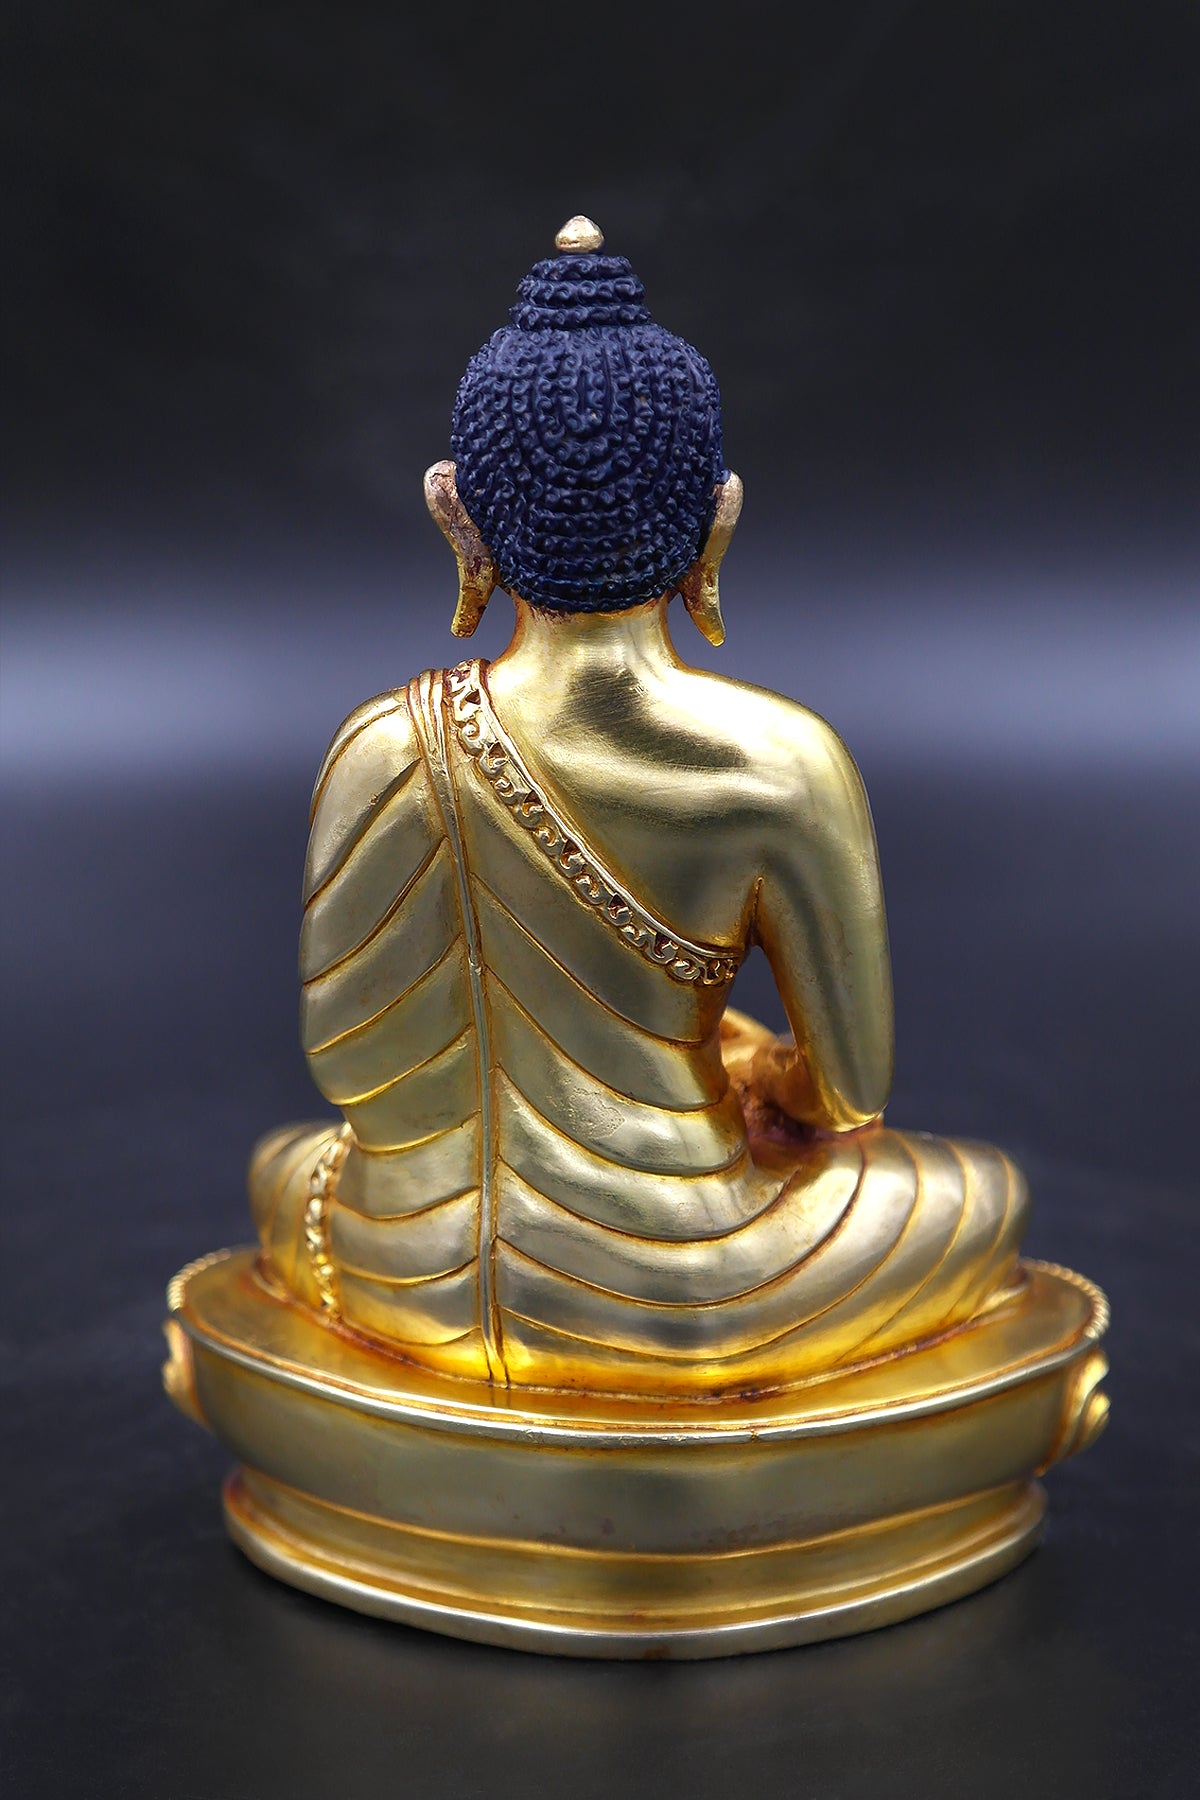 Handmade Amitabha Buddha Statue 6"